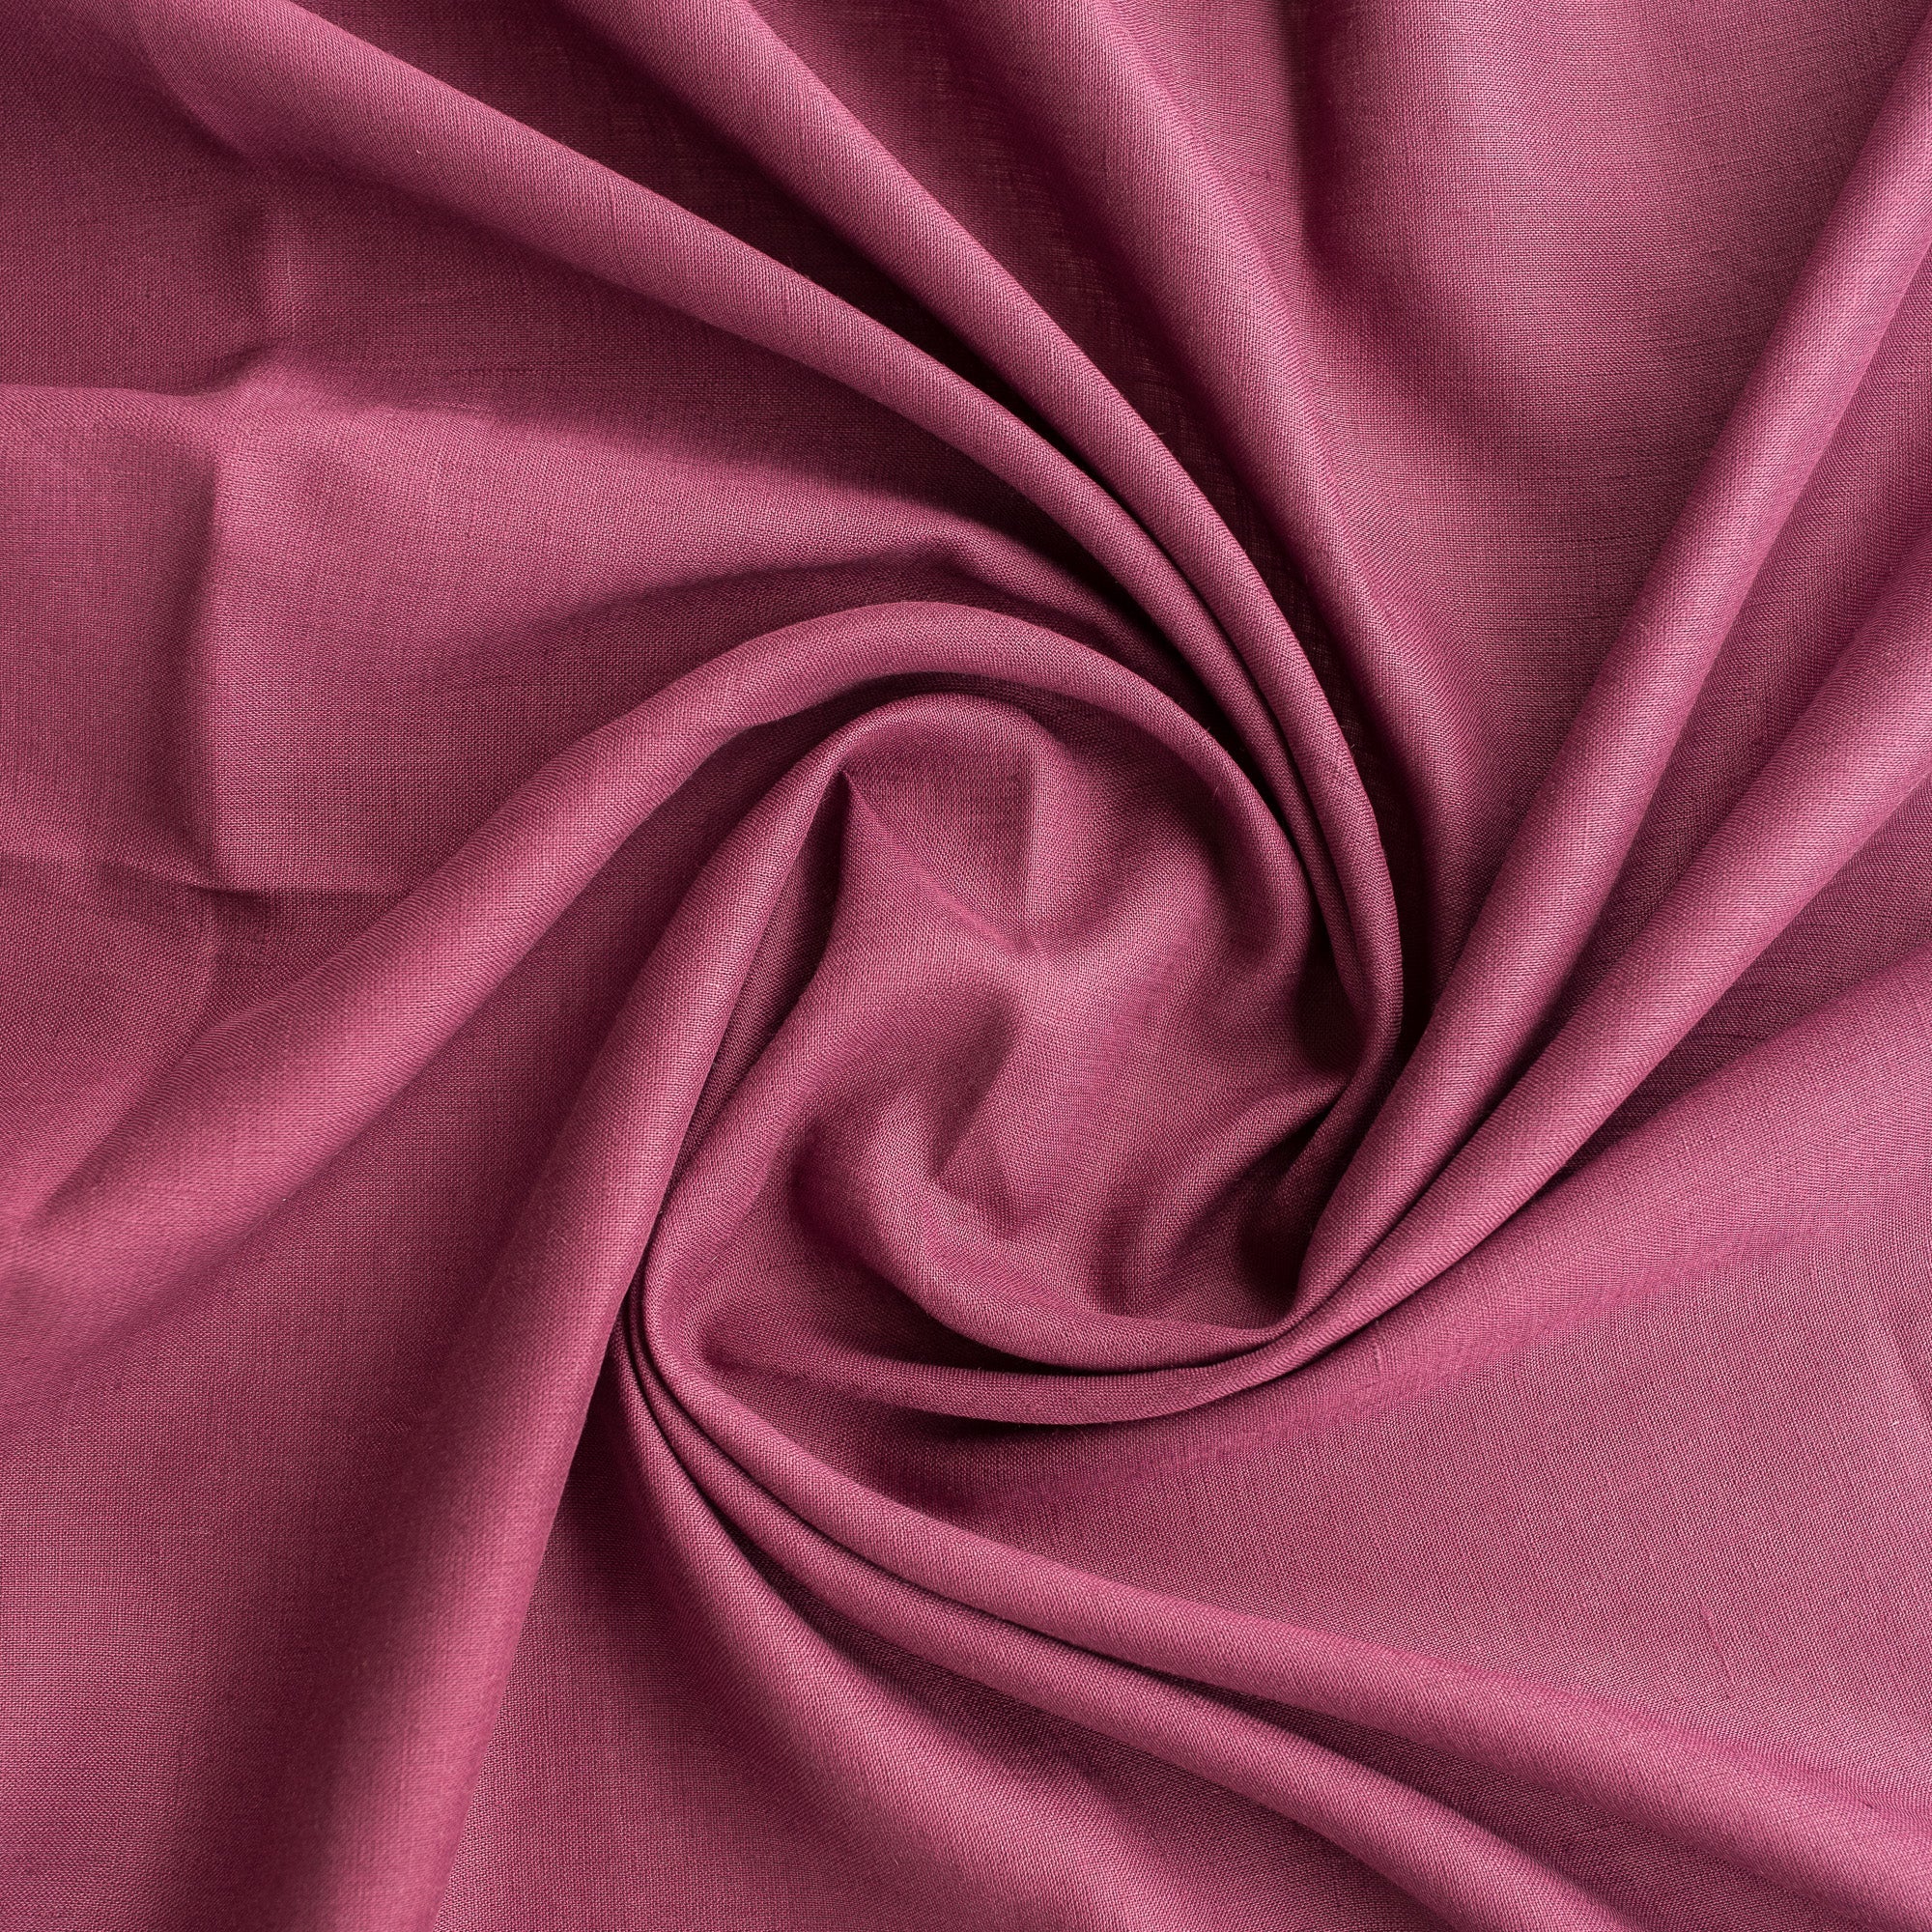 Plain Plum 100% Linen Fabric